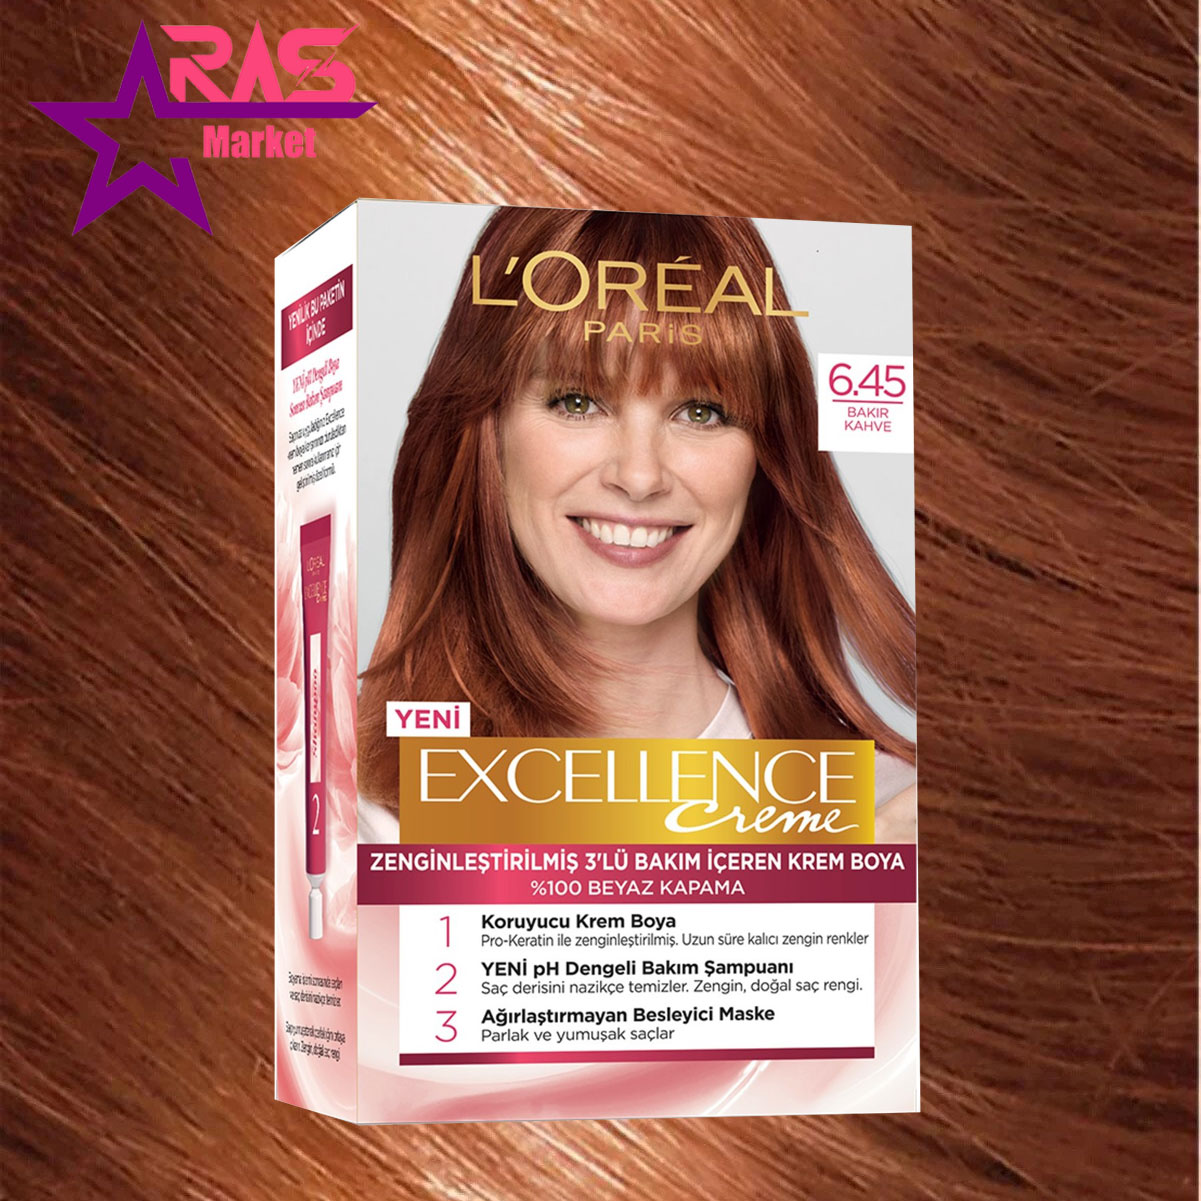 کیت رنگ مو لورآل سری Excellence شماره 6.45 ، خرید اینترنتی محصولات شوینده و بهداشتی